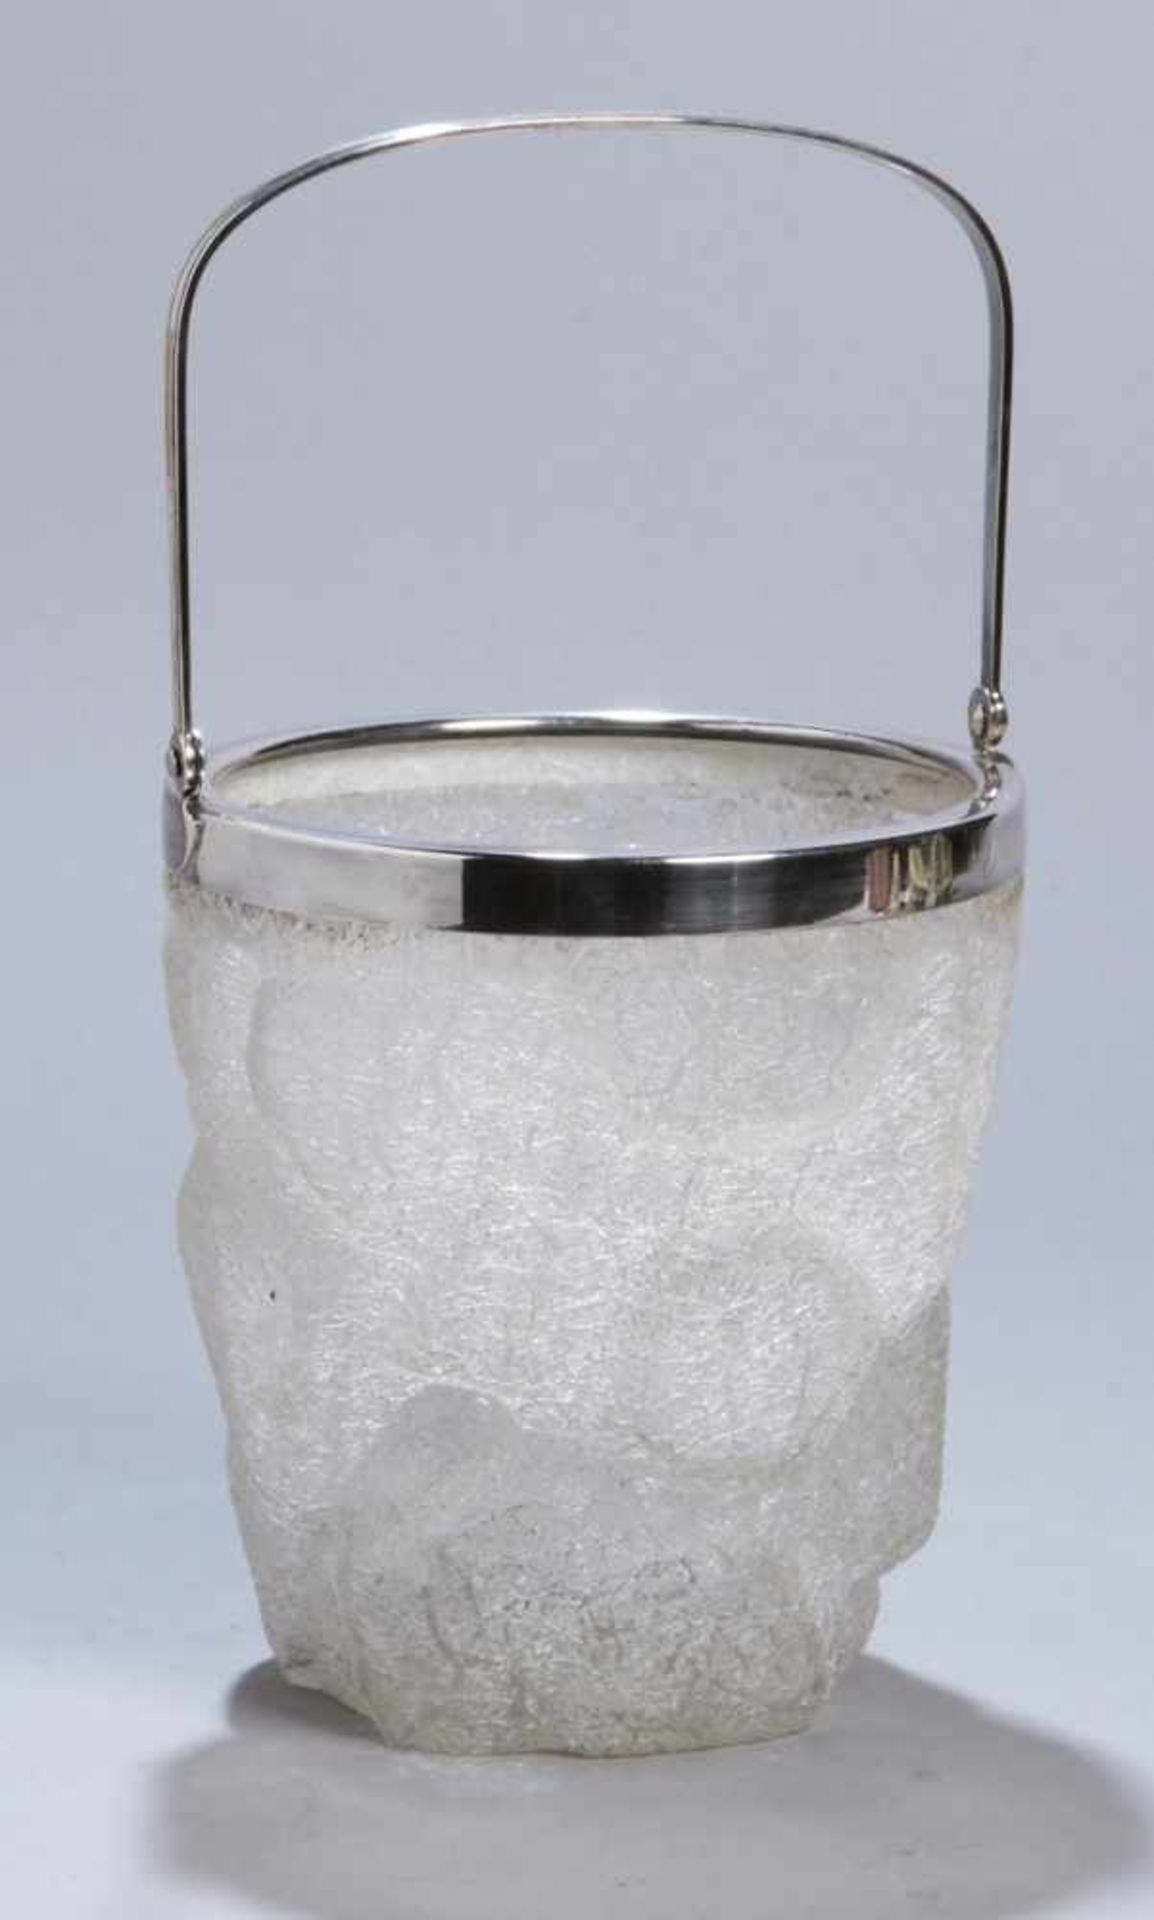 Glas-Eiswürfelbehälter, WMF, Geislingen, um 1900, Mod.nr.: 10, unregelmäßiger, rundlicherStand, sich